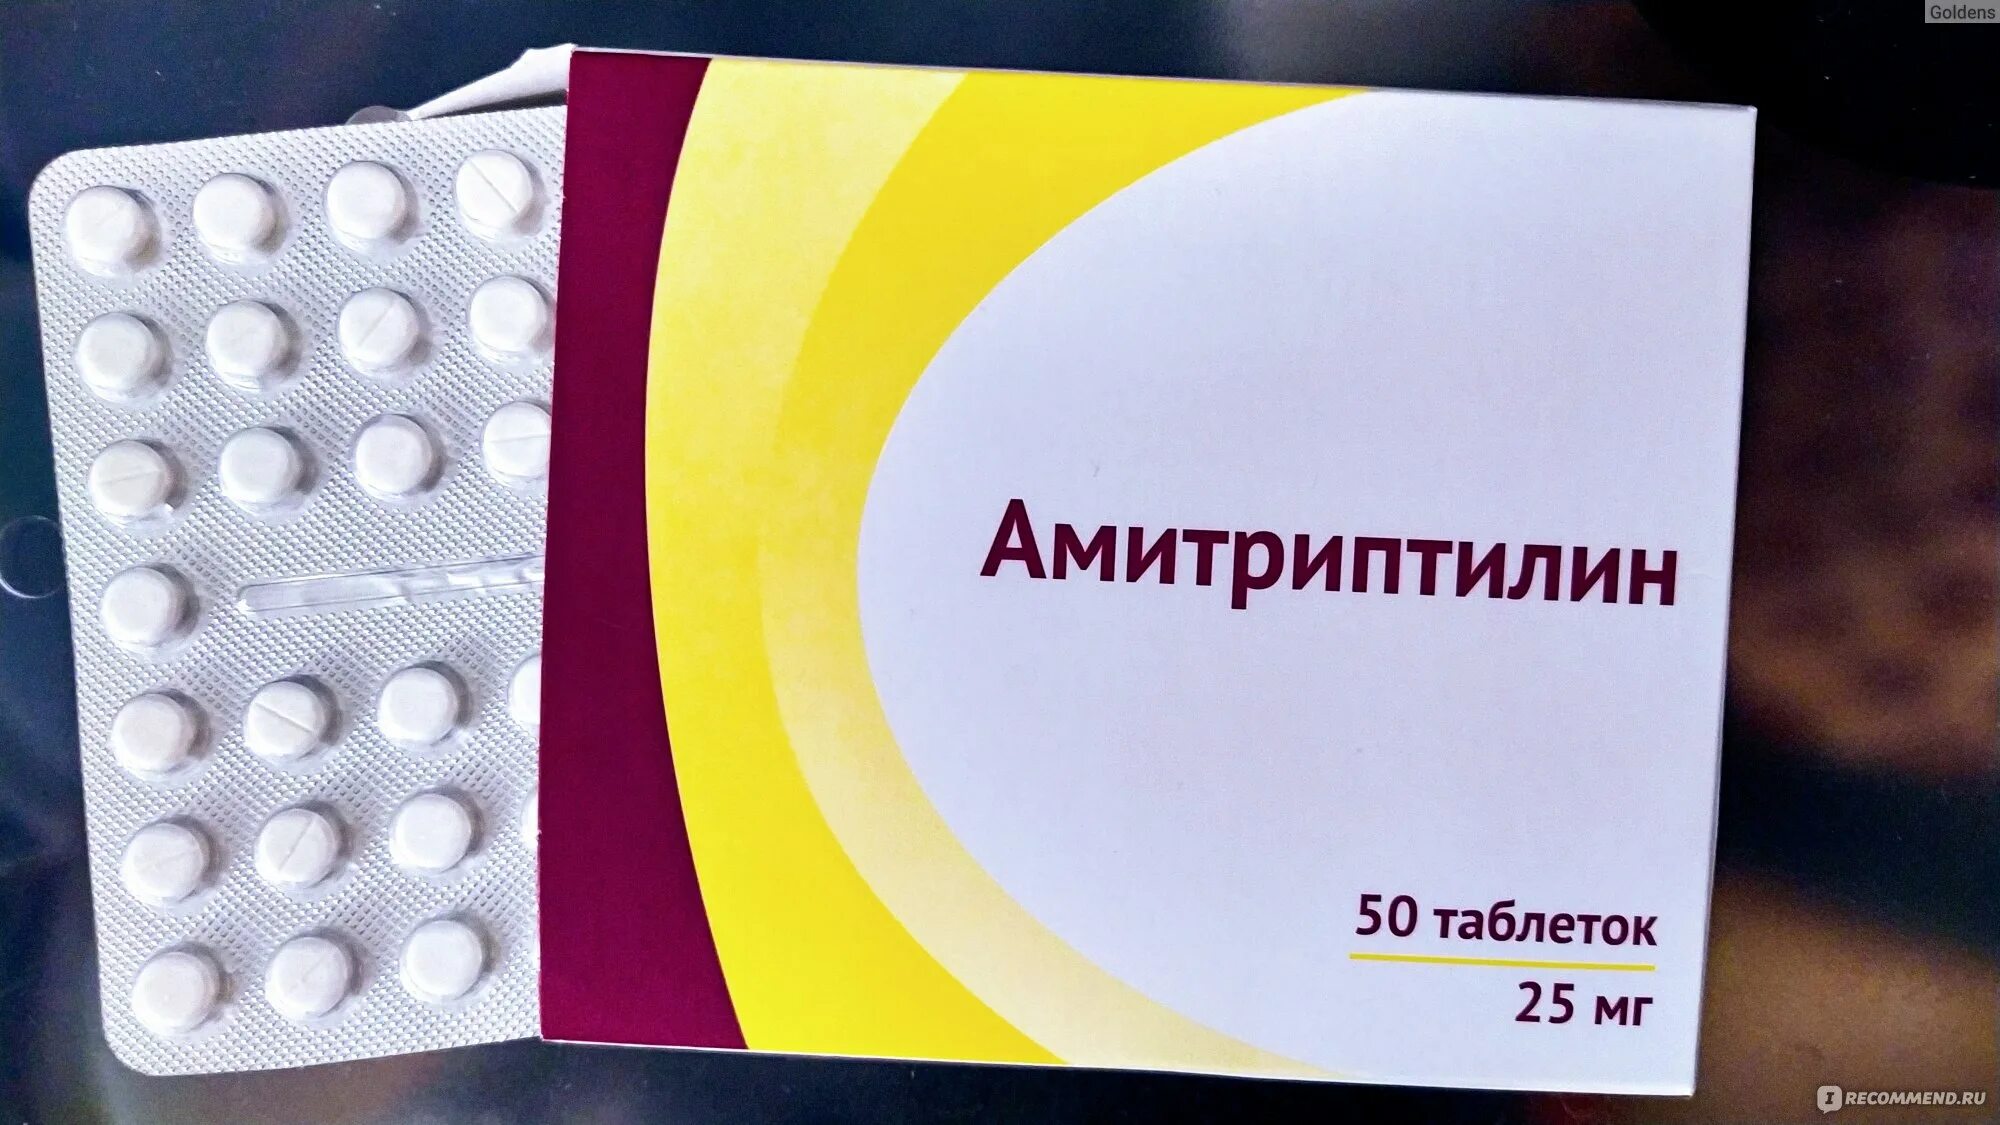 Амитриптилин 50 мг. Амитриптилин 10 мг. Амитриптилин 25 мг. Амитриптилин таблетки 50мг.